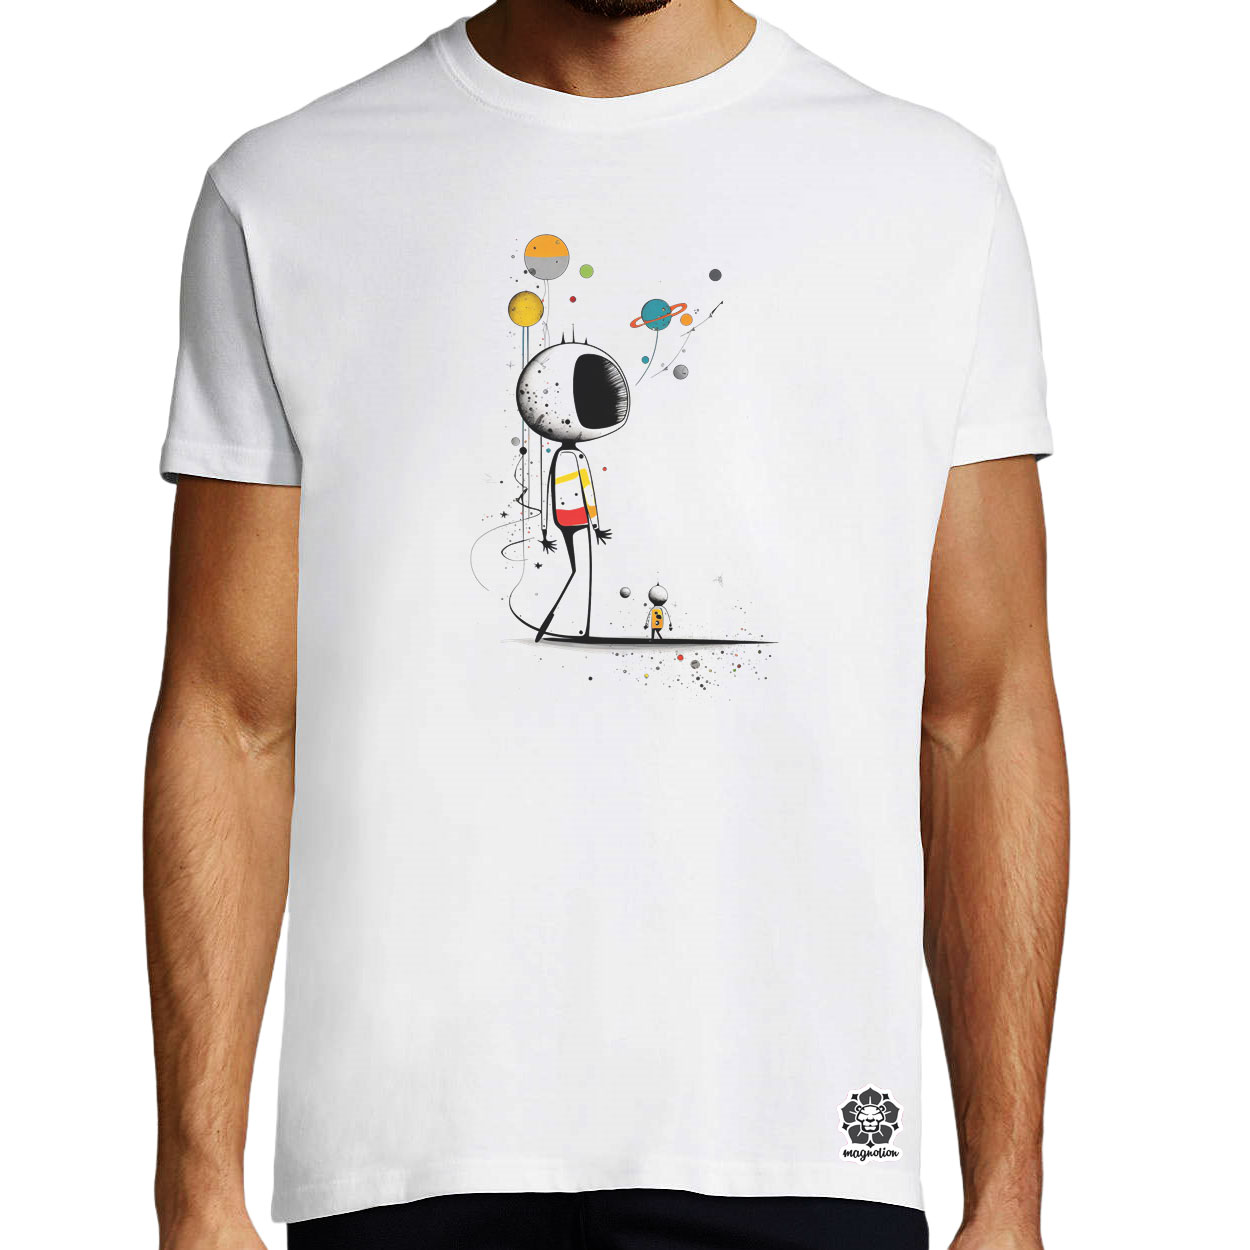 Joan Miró űr és asztronauta v6